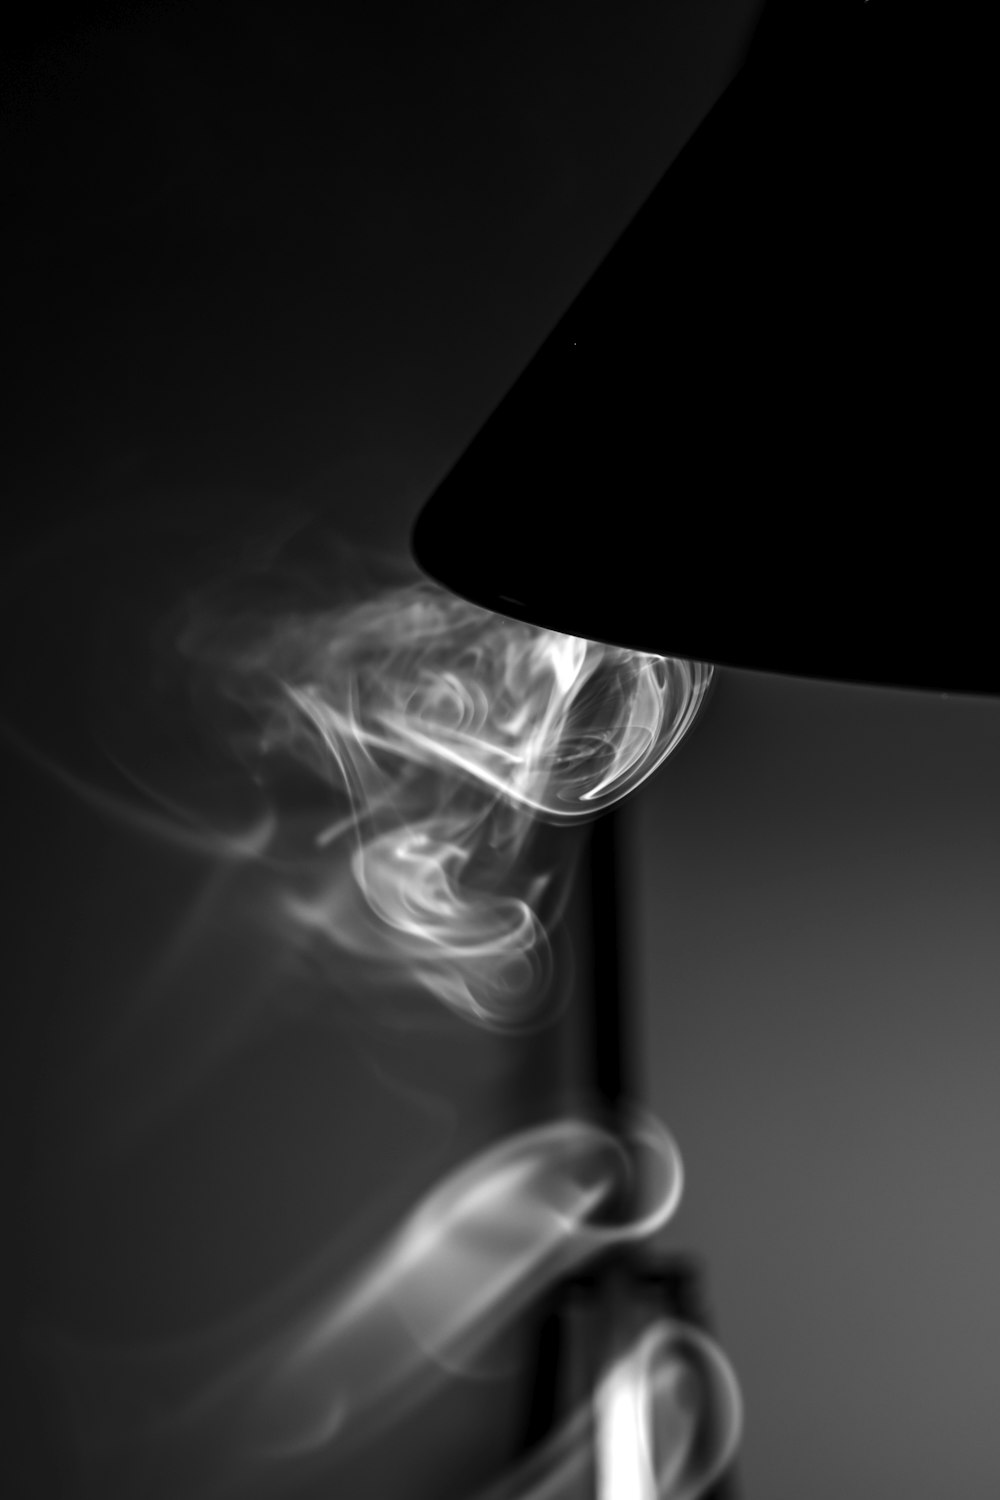 eine schwarze Lampe, aus der Rauch austritt